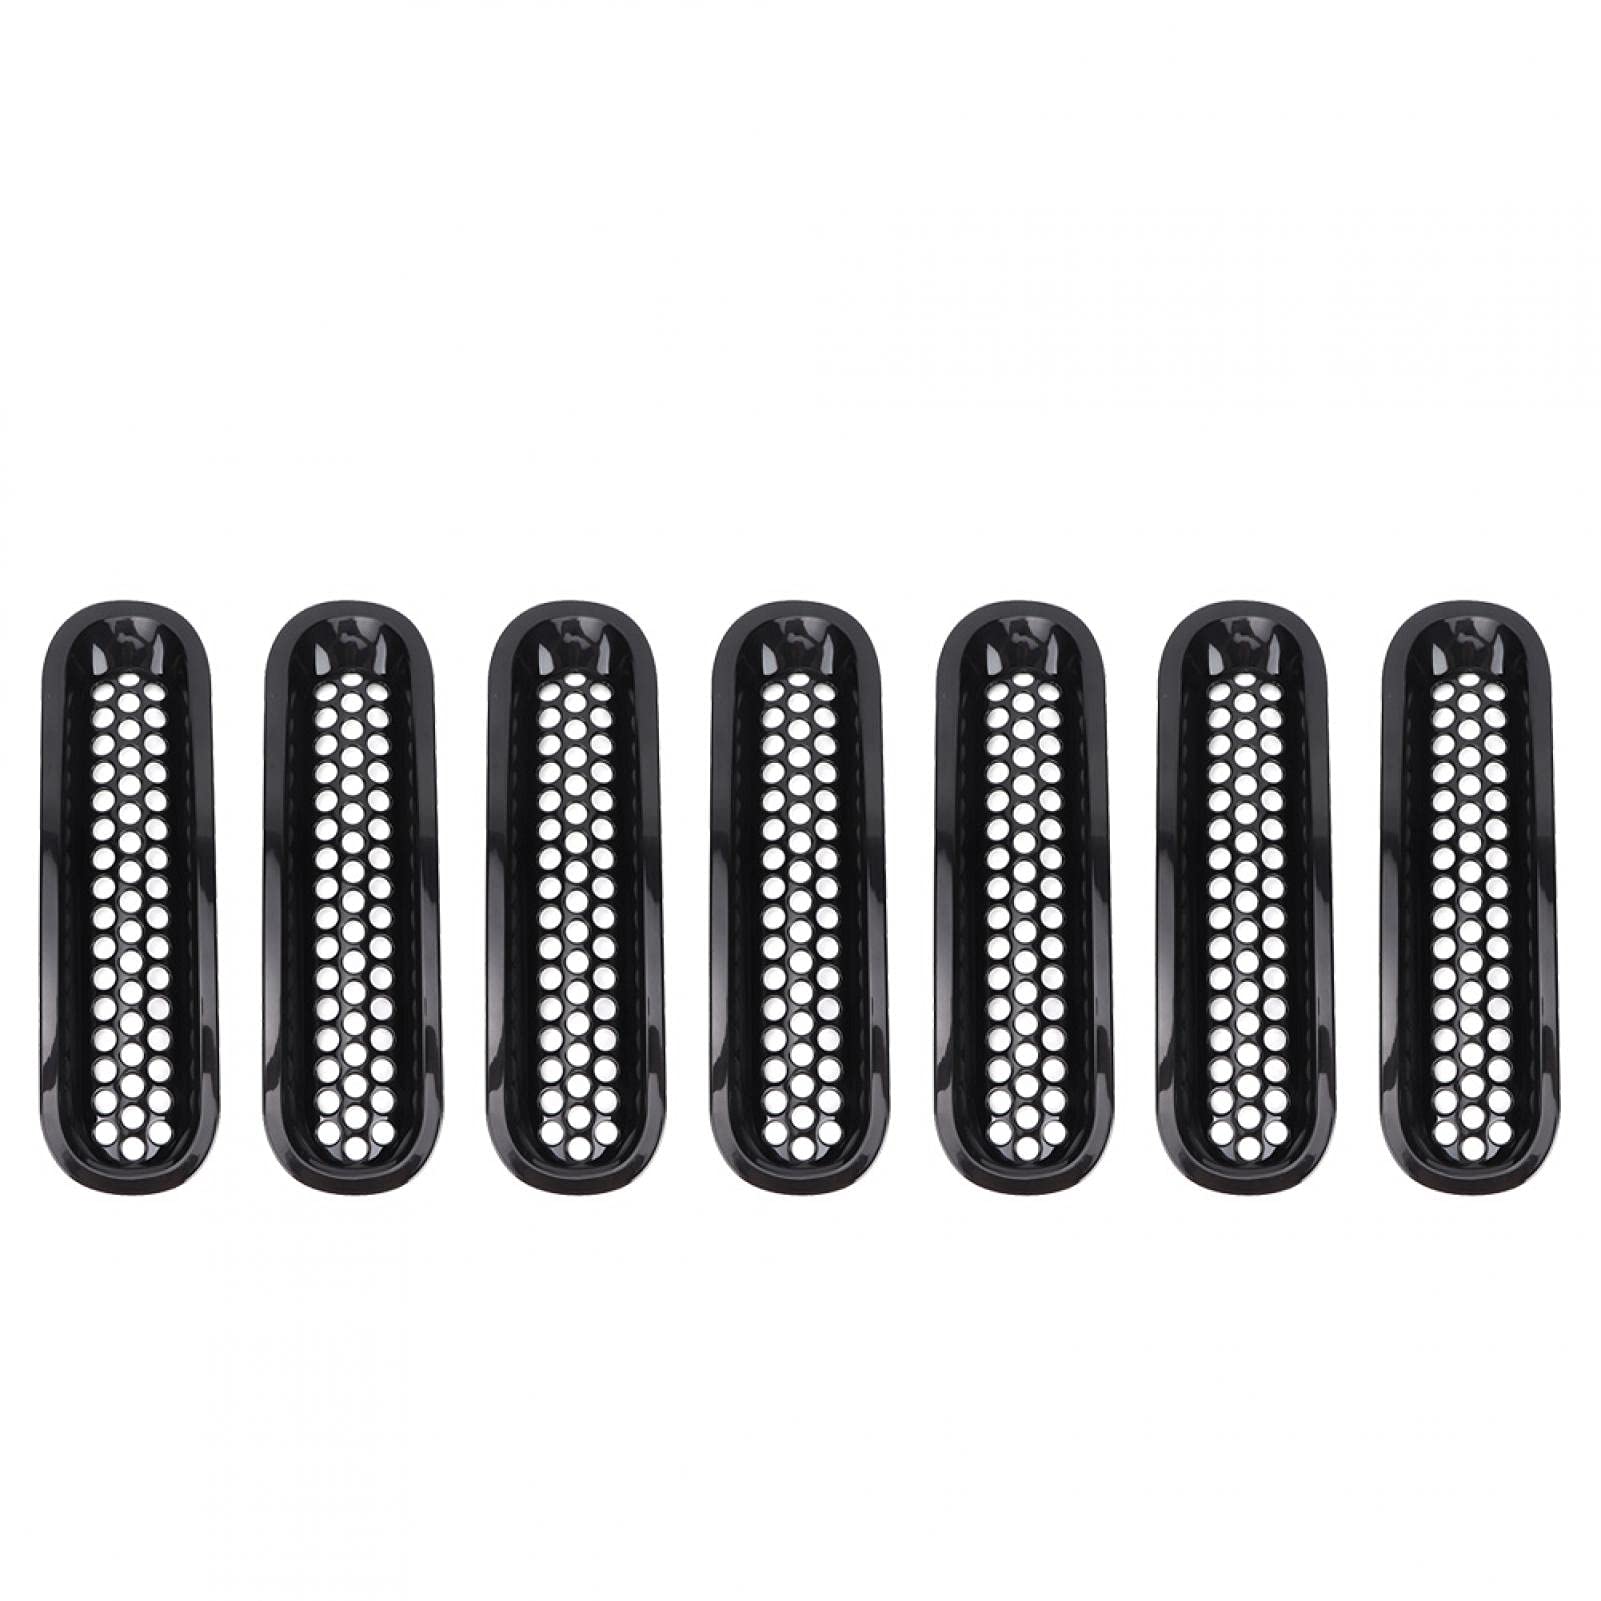 Kühlergrill, Stoßstangengitter, 7 Stück, schwarz, für Stoßstangen-Gitter passend für Wrangler JK 2007-2017 von Yosoo